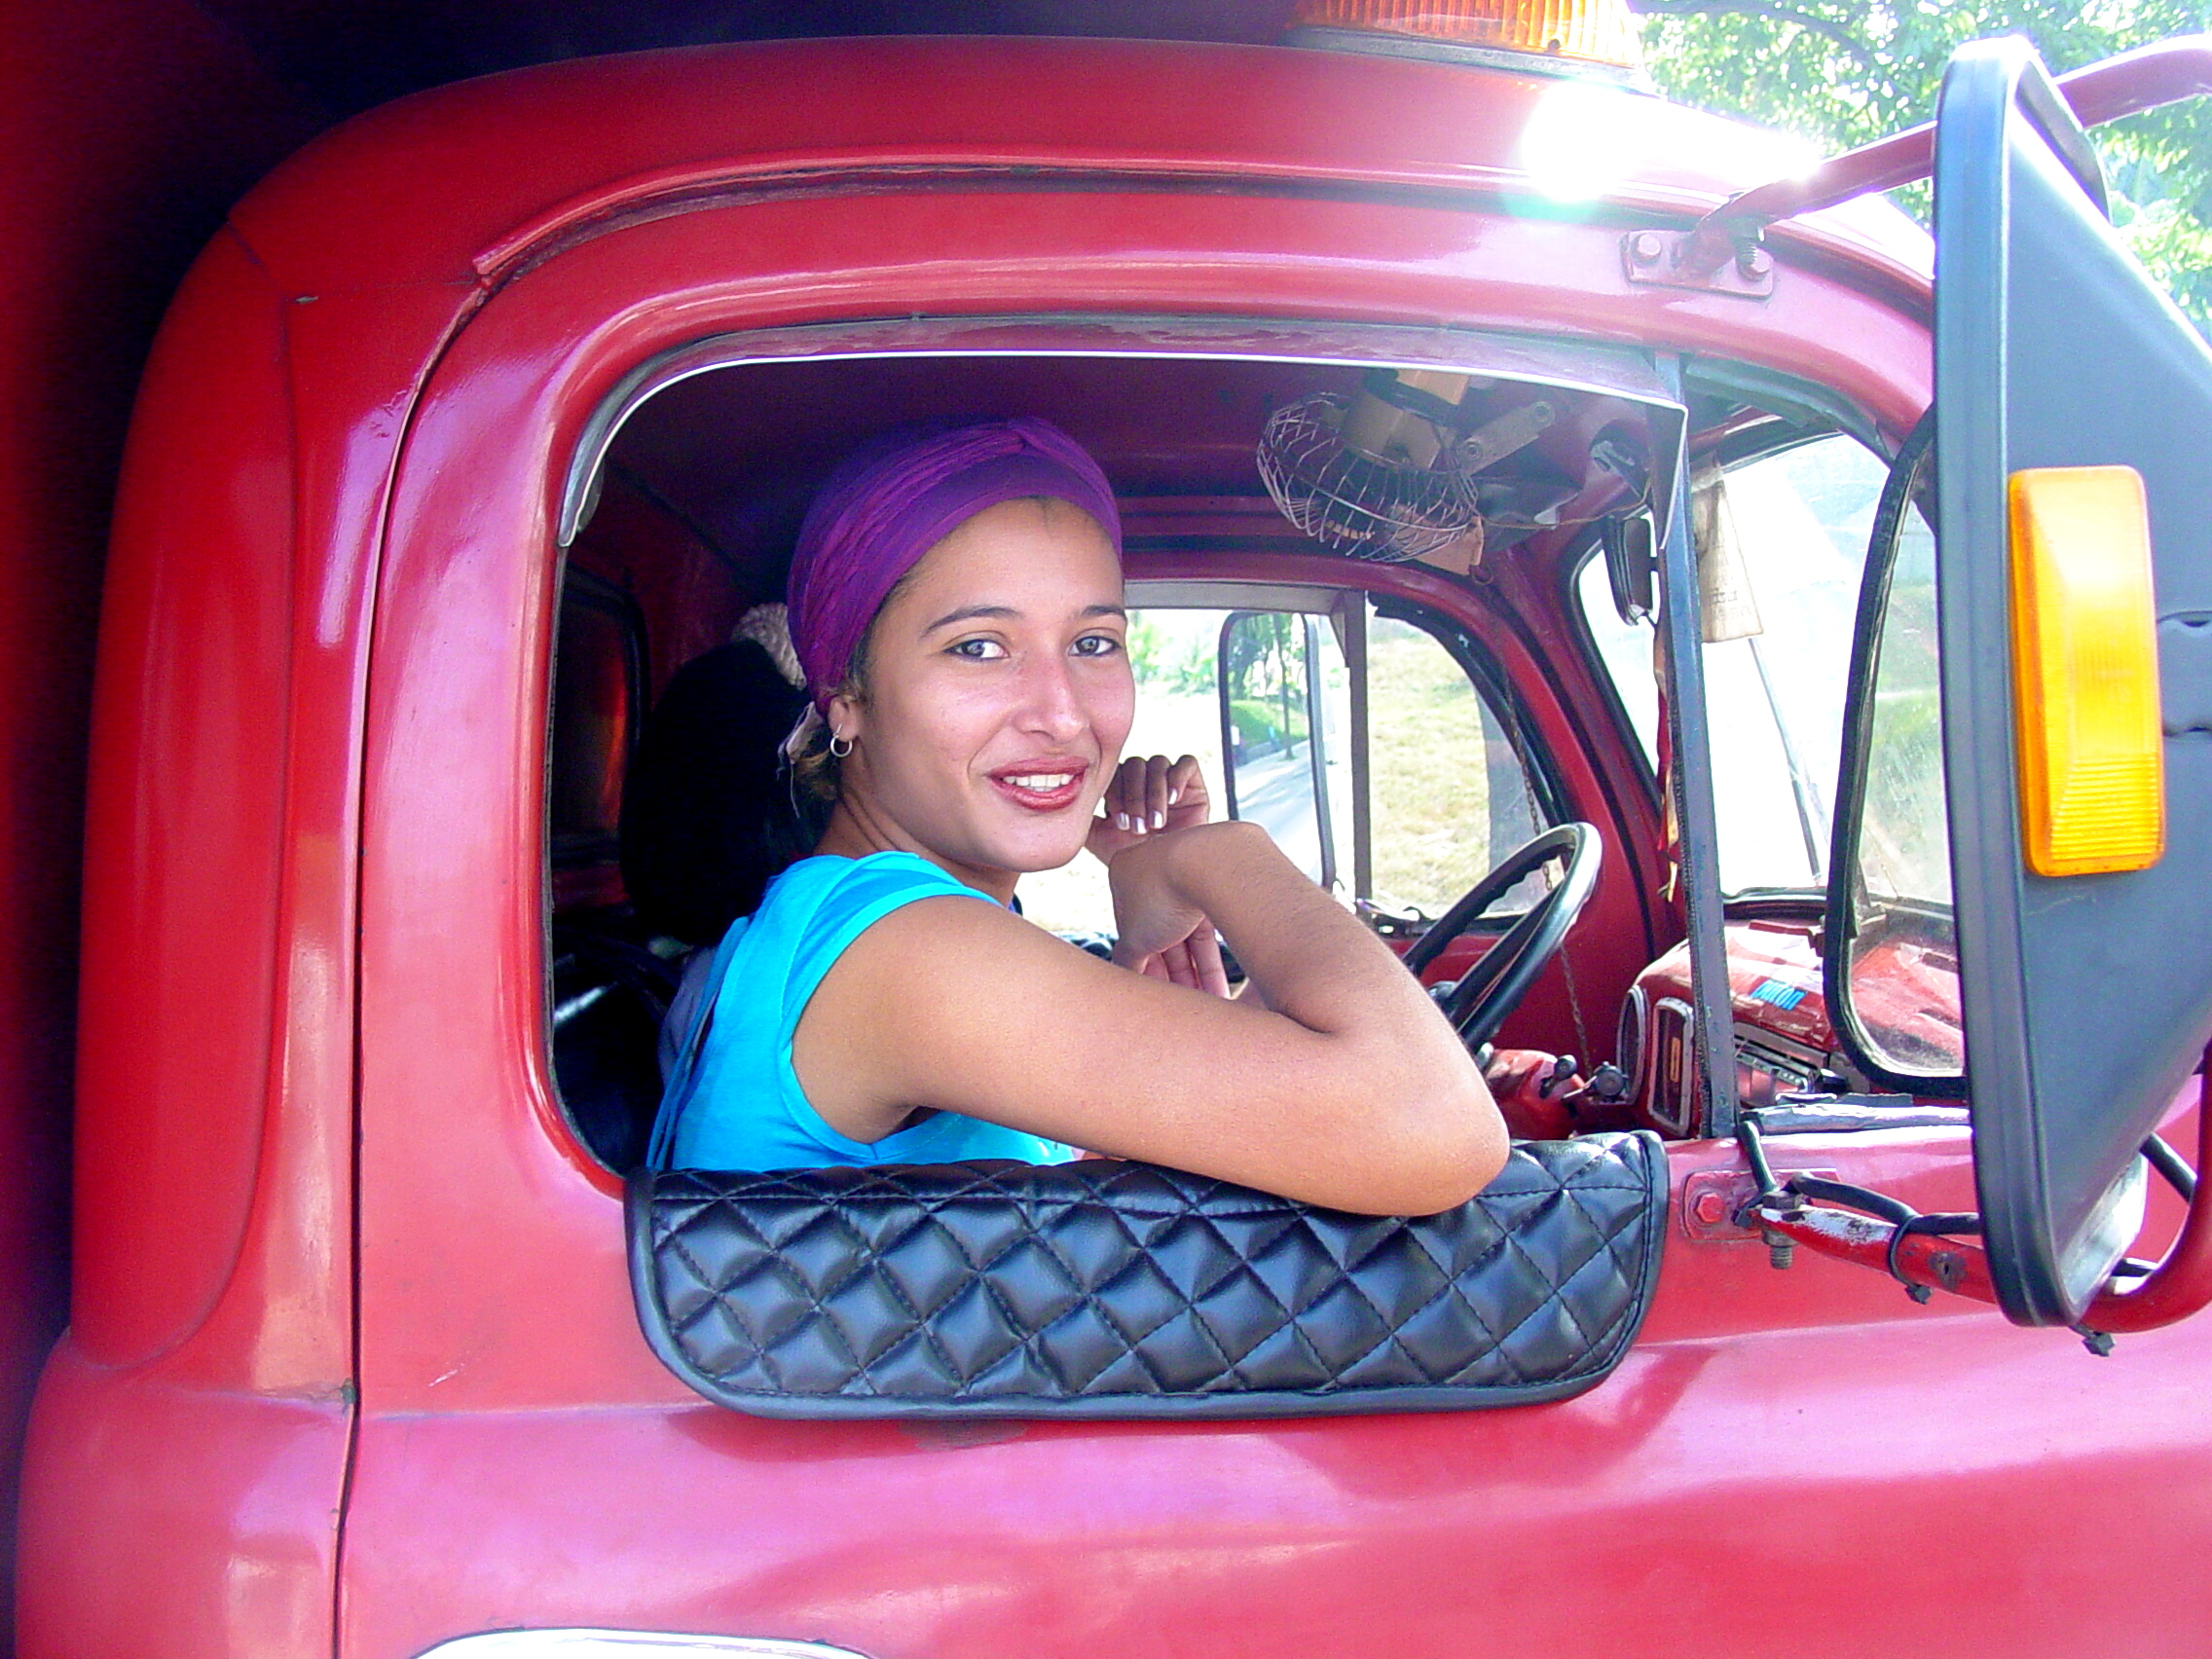 Woman in Truck Window - Holguin - Cuba